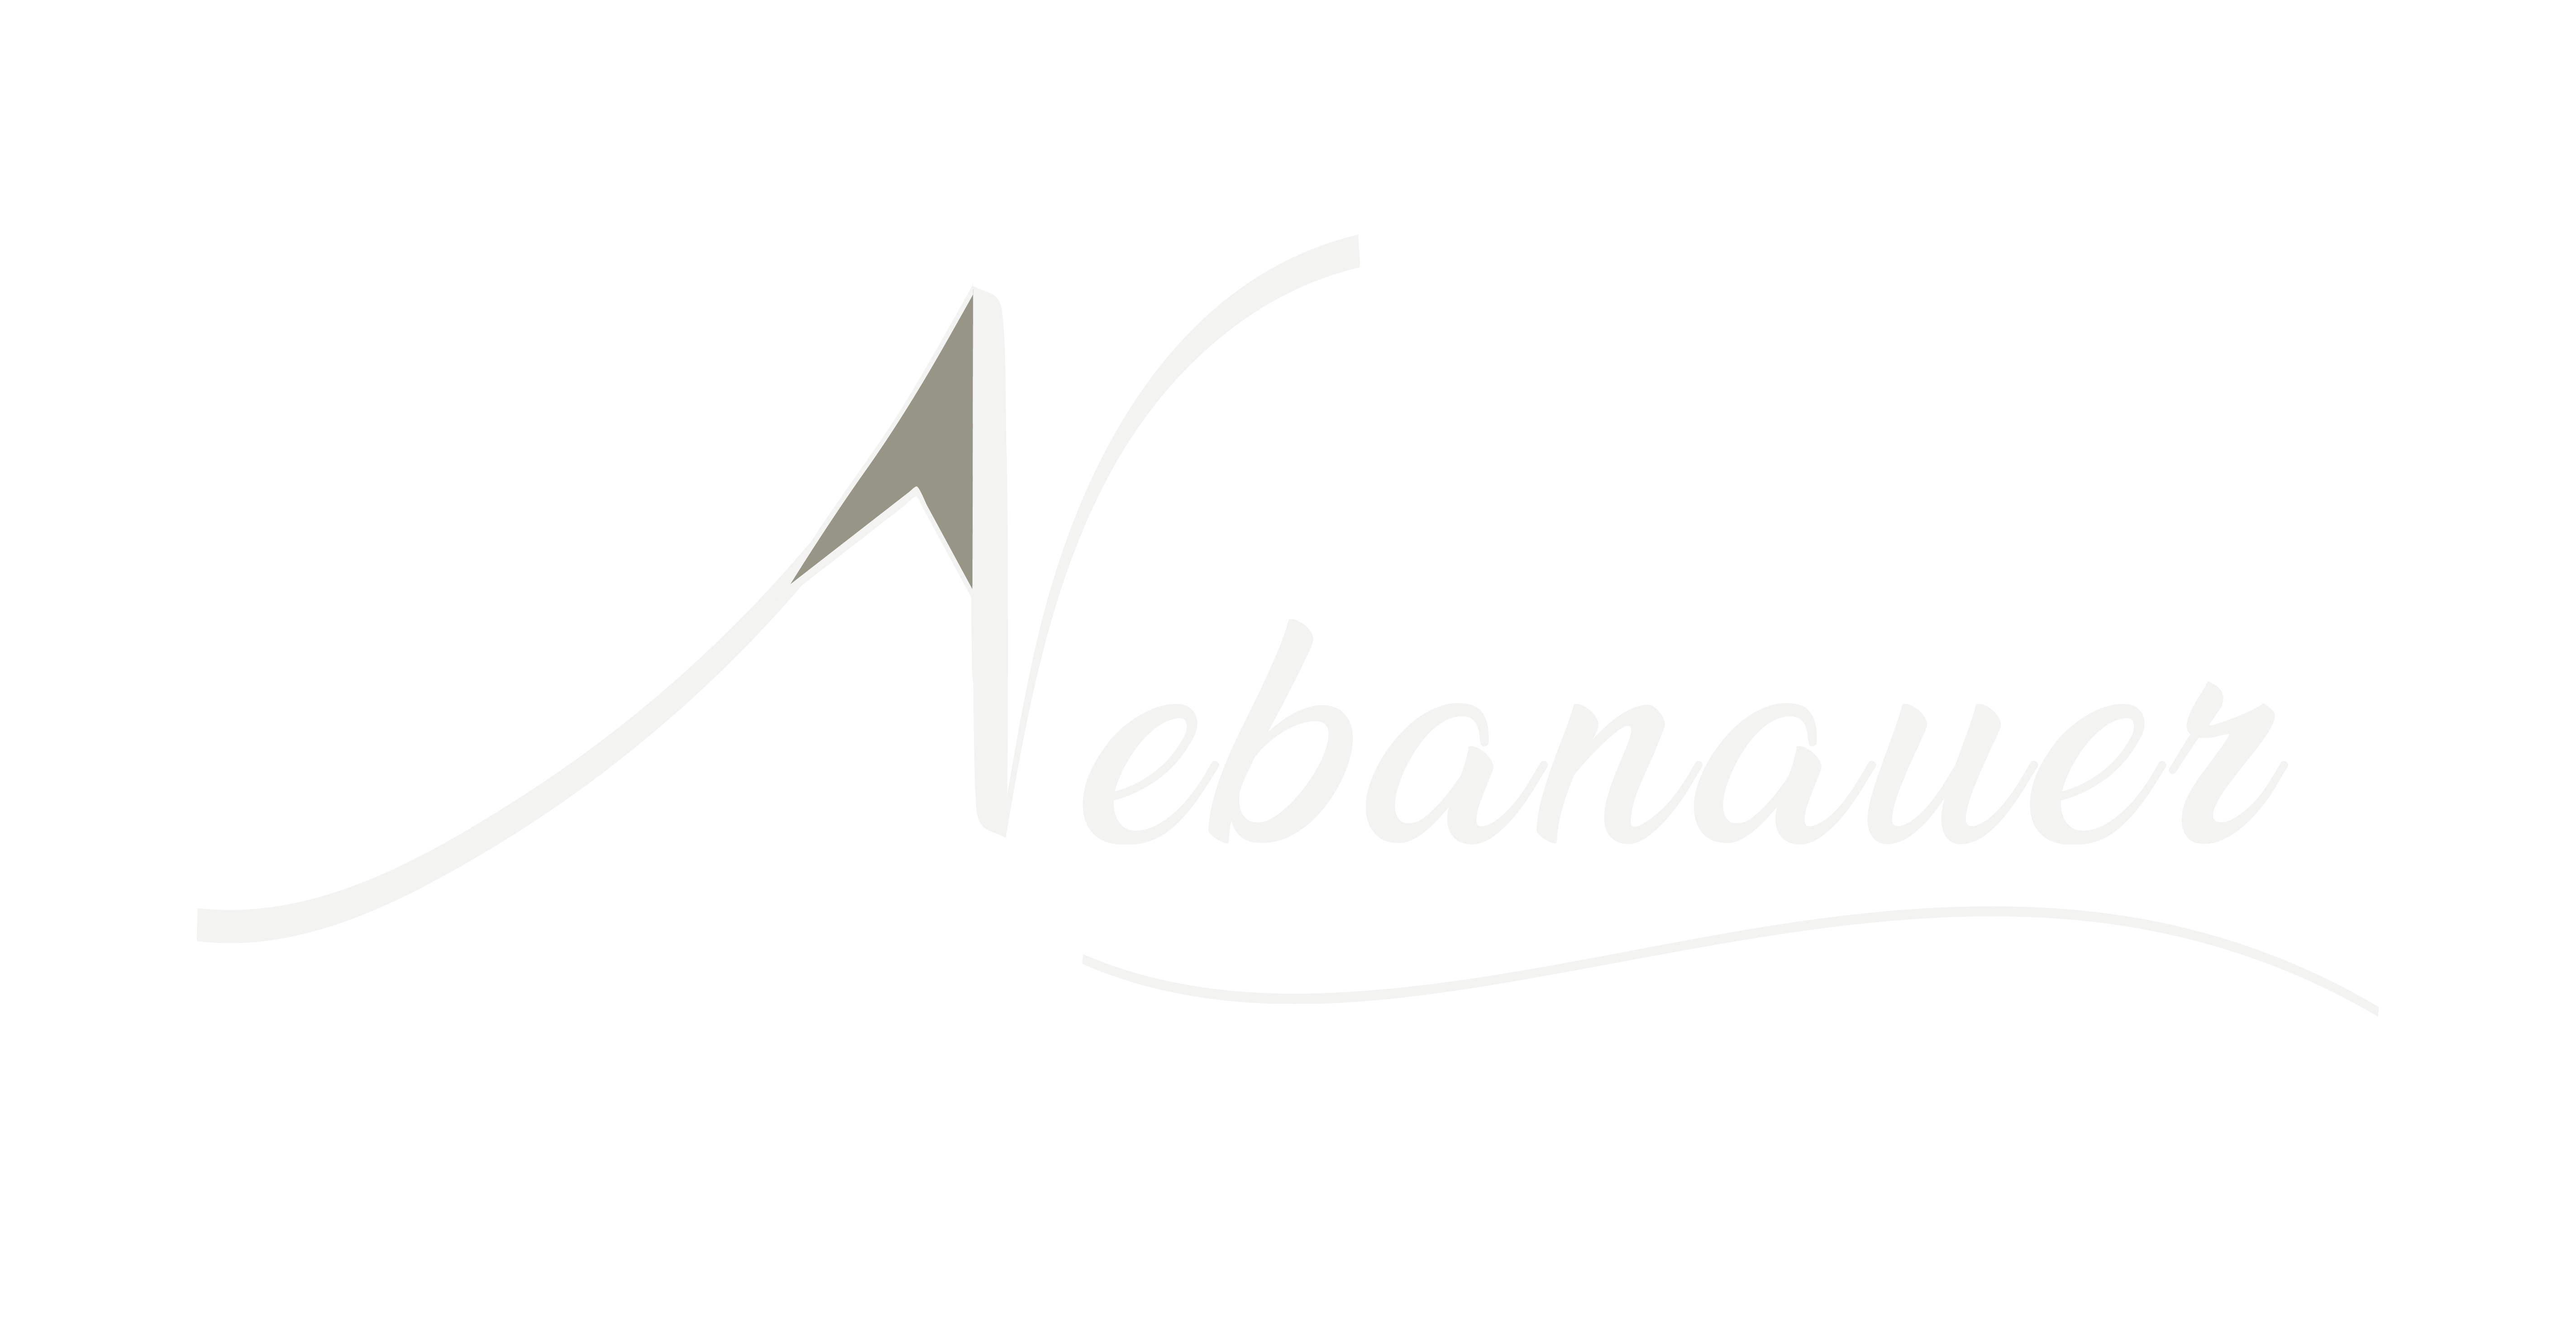 Nebanauer